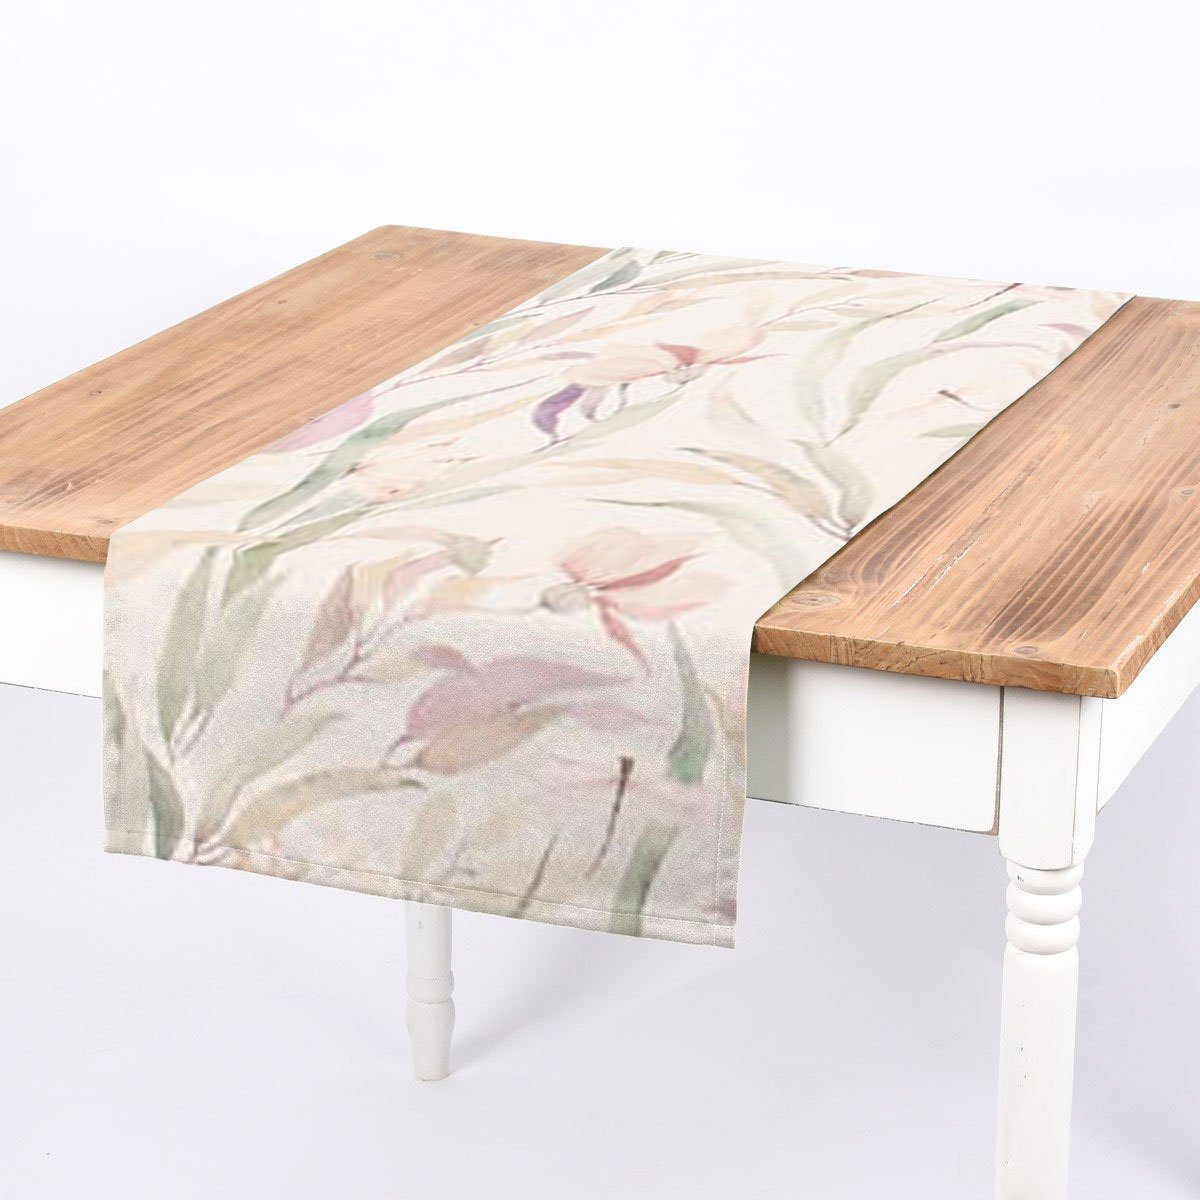 SCHÖNER LEBEN. Tischläufer SCHÖNER LEBEN. Tischläufer Digitaldruck Blätter weiß pastell 40x160, handmade | Tischläufer